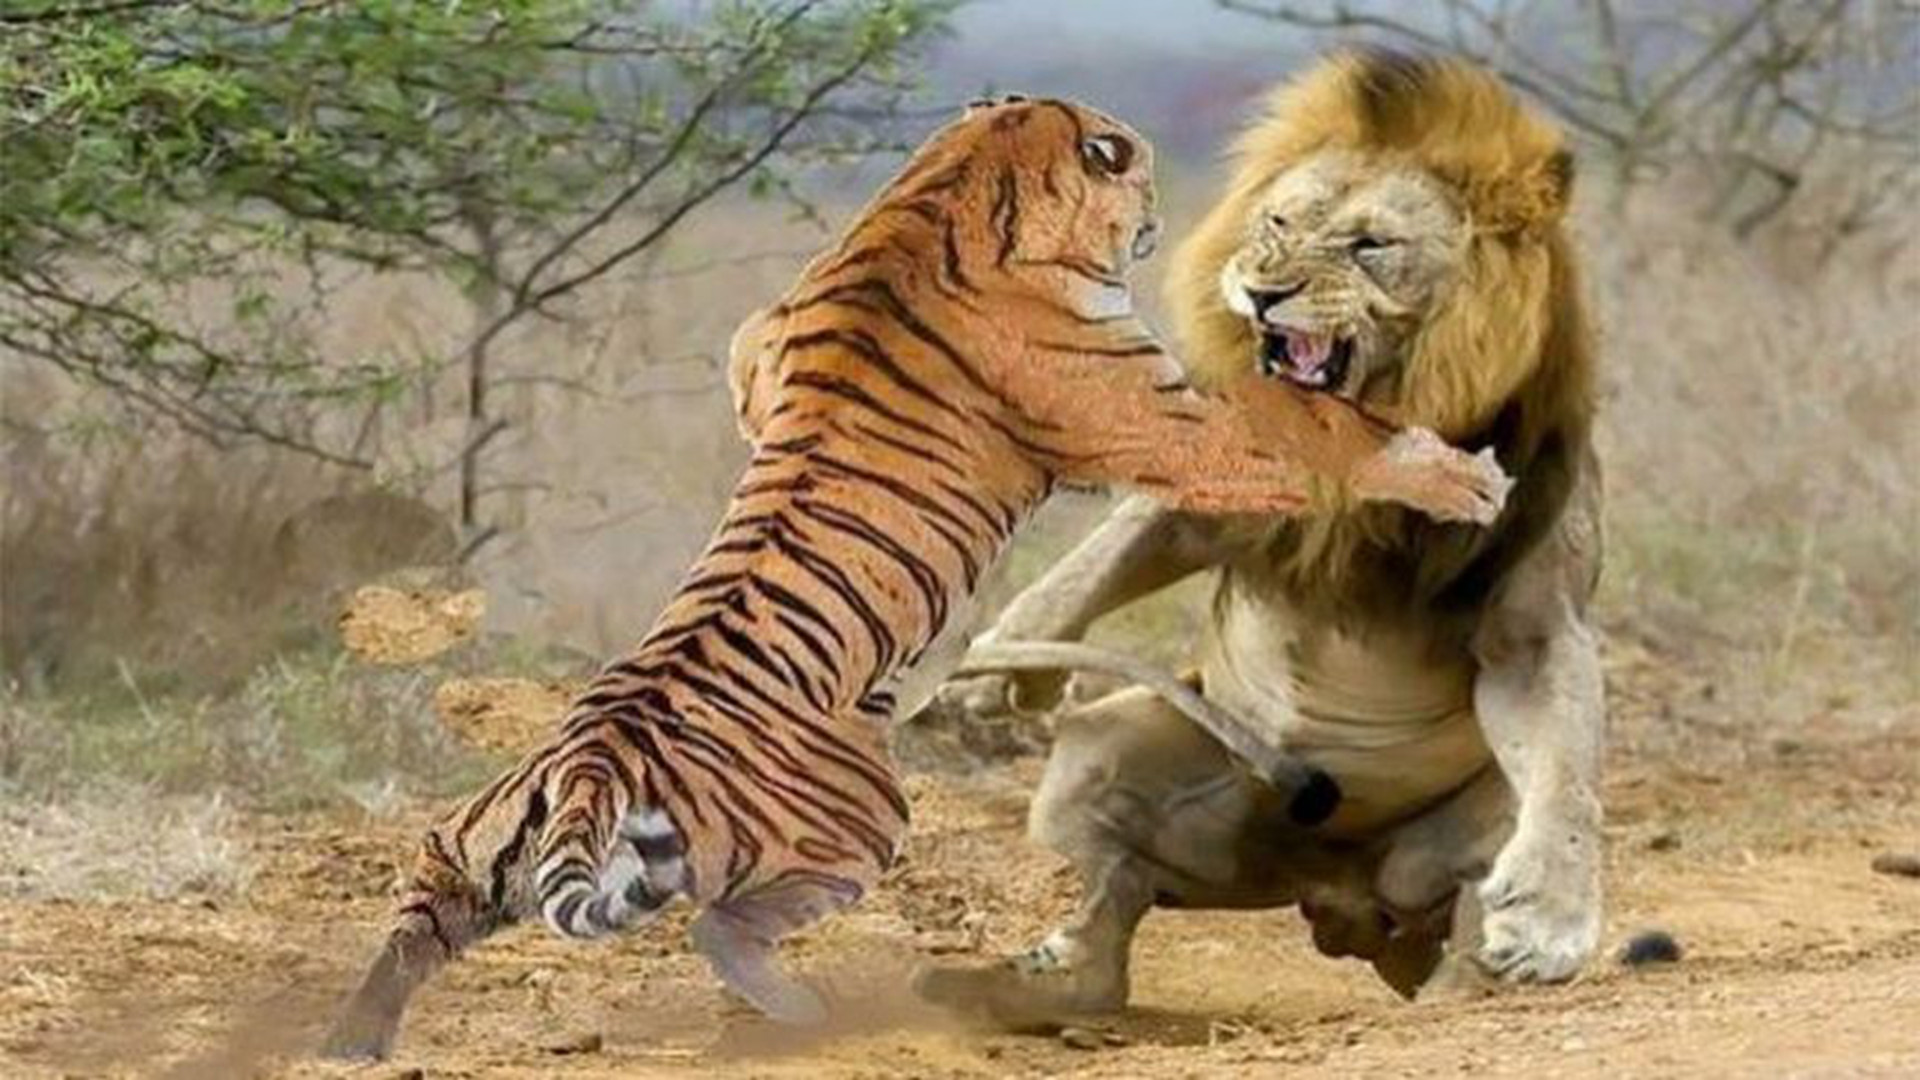 狮子从背后偷袭老虎,激烈大战一触即发,究竟谁才是真王者?